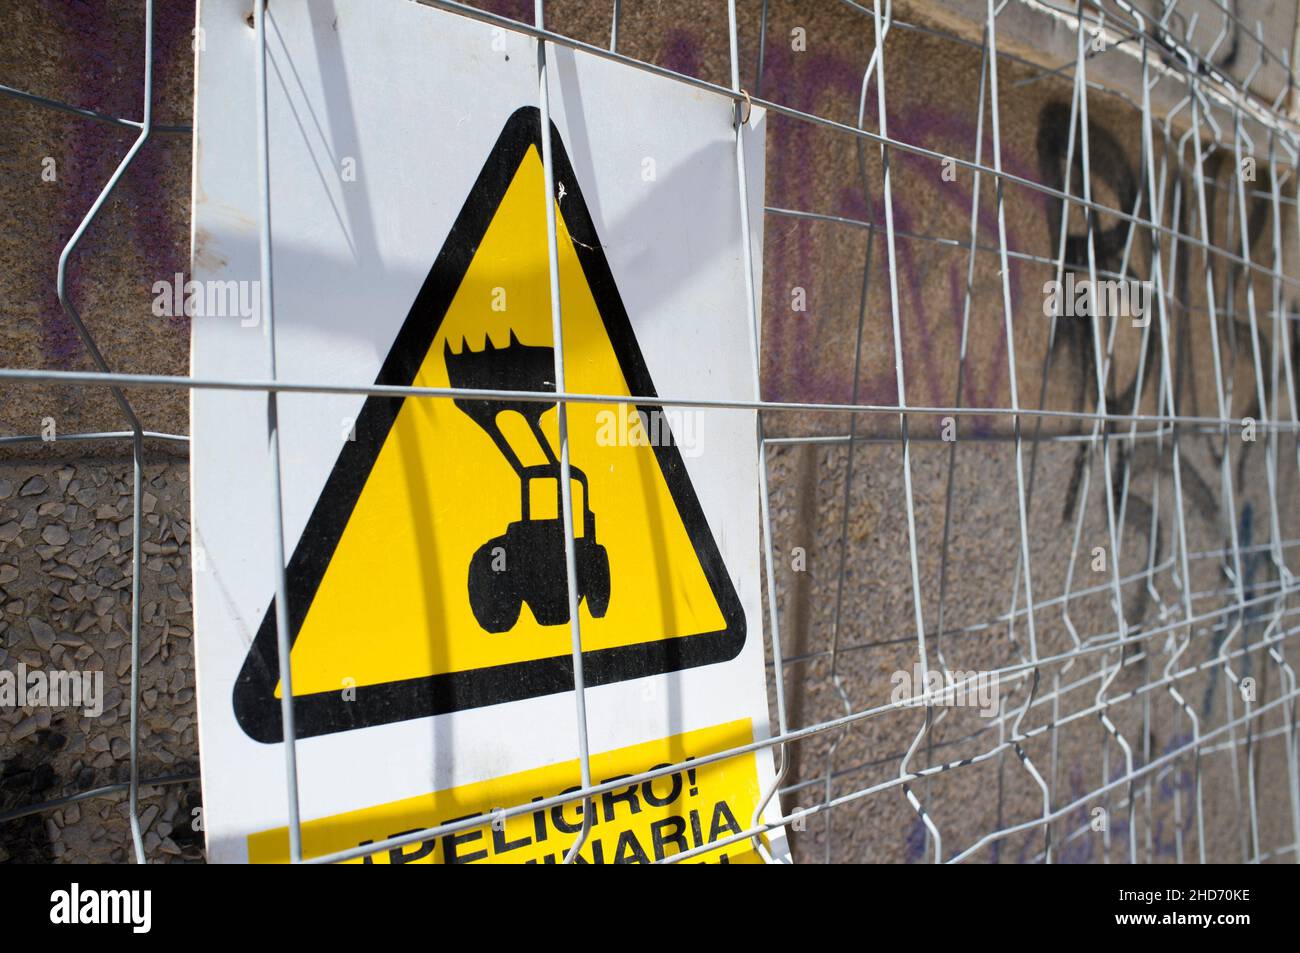 Segnale di avvertimento per macchine pesanti sul lavoro. Il caricatore frontale del trattore è visibile attraverso la recinzione. Foto Stock